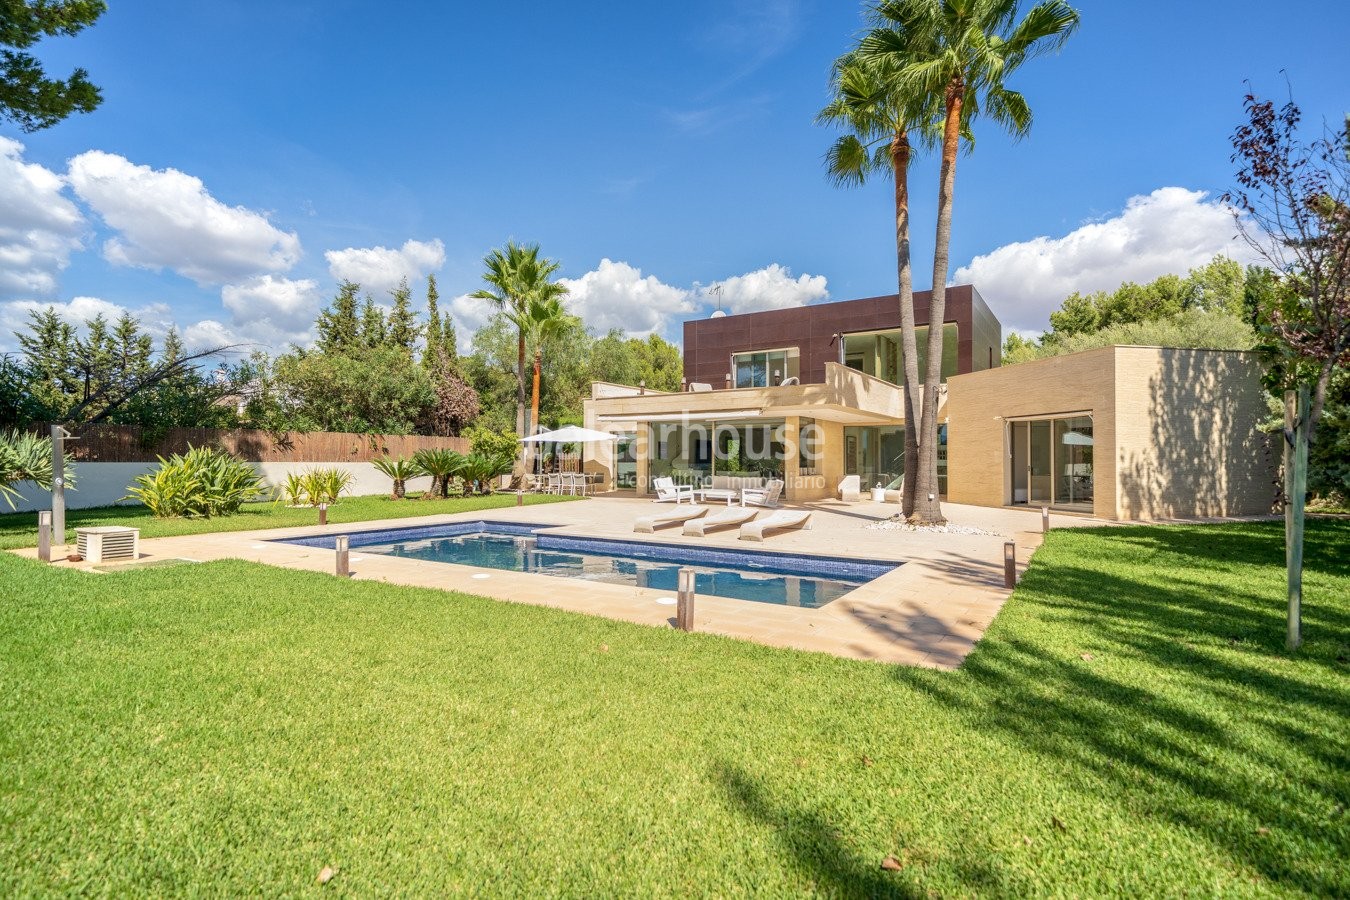 Moderne, lichtdurchflutete Villa mit großem Garten und Schwimmbad ganz in der Nähe von Palma.